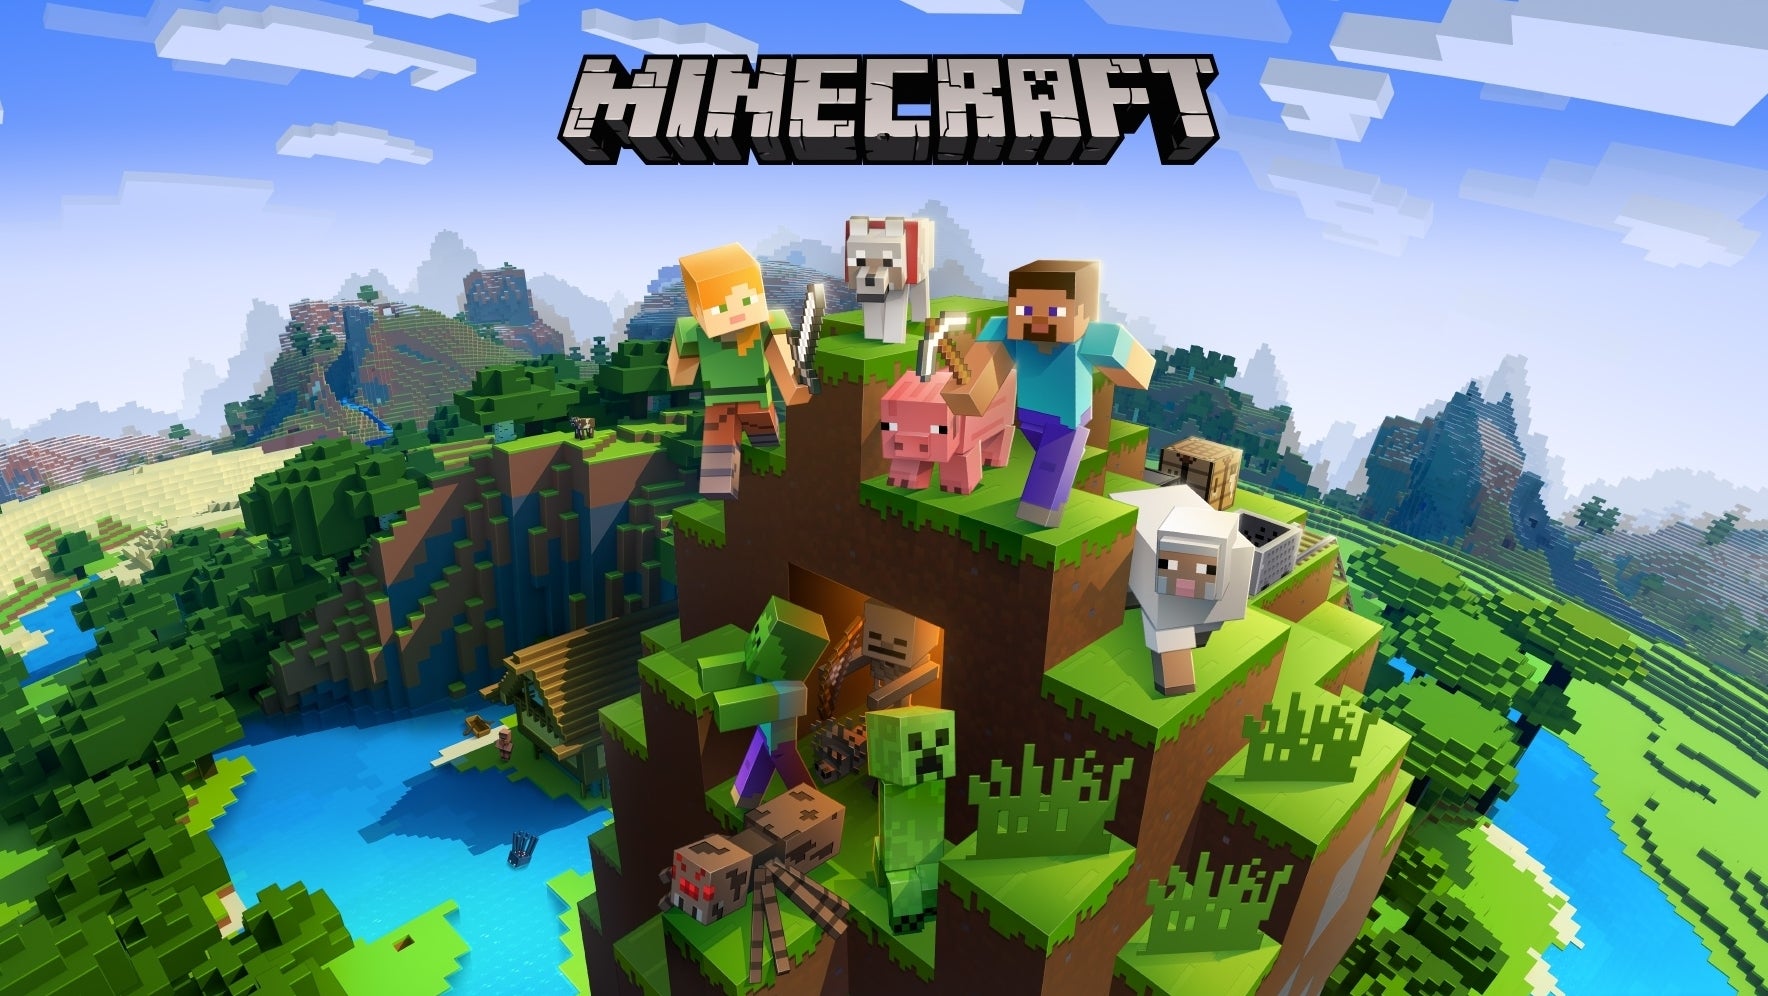 Immagine di Minecraft ha più di 141 milioni di utenti mensili attivi e i numeri impressionanti non finiscono qui